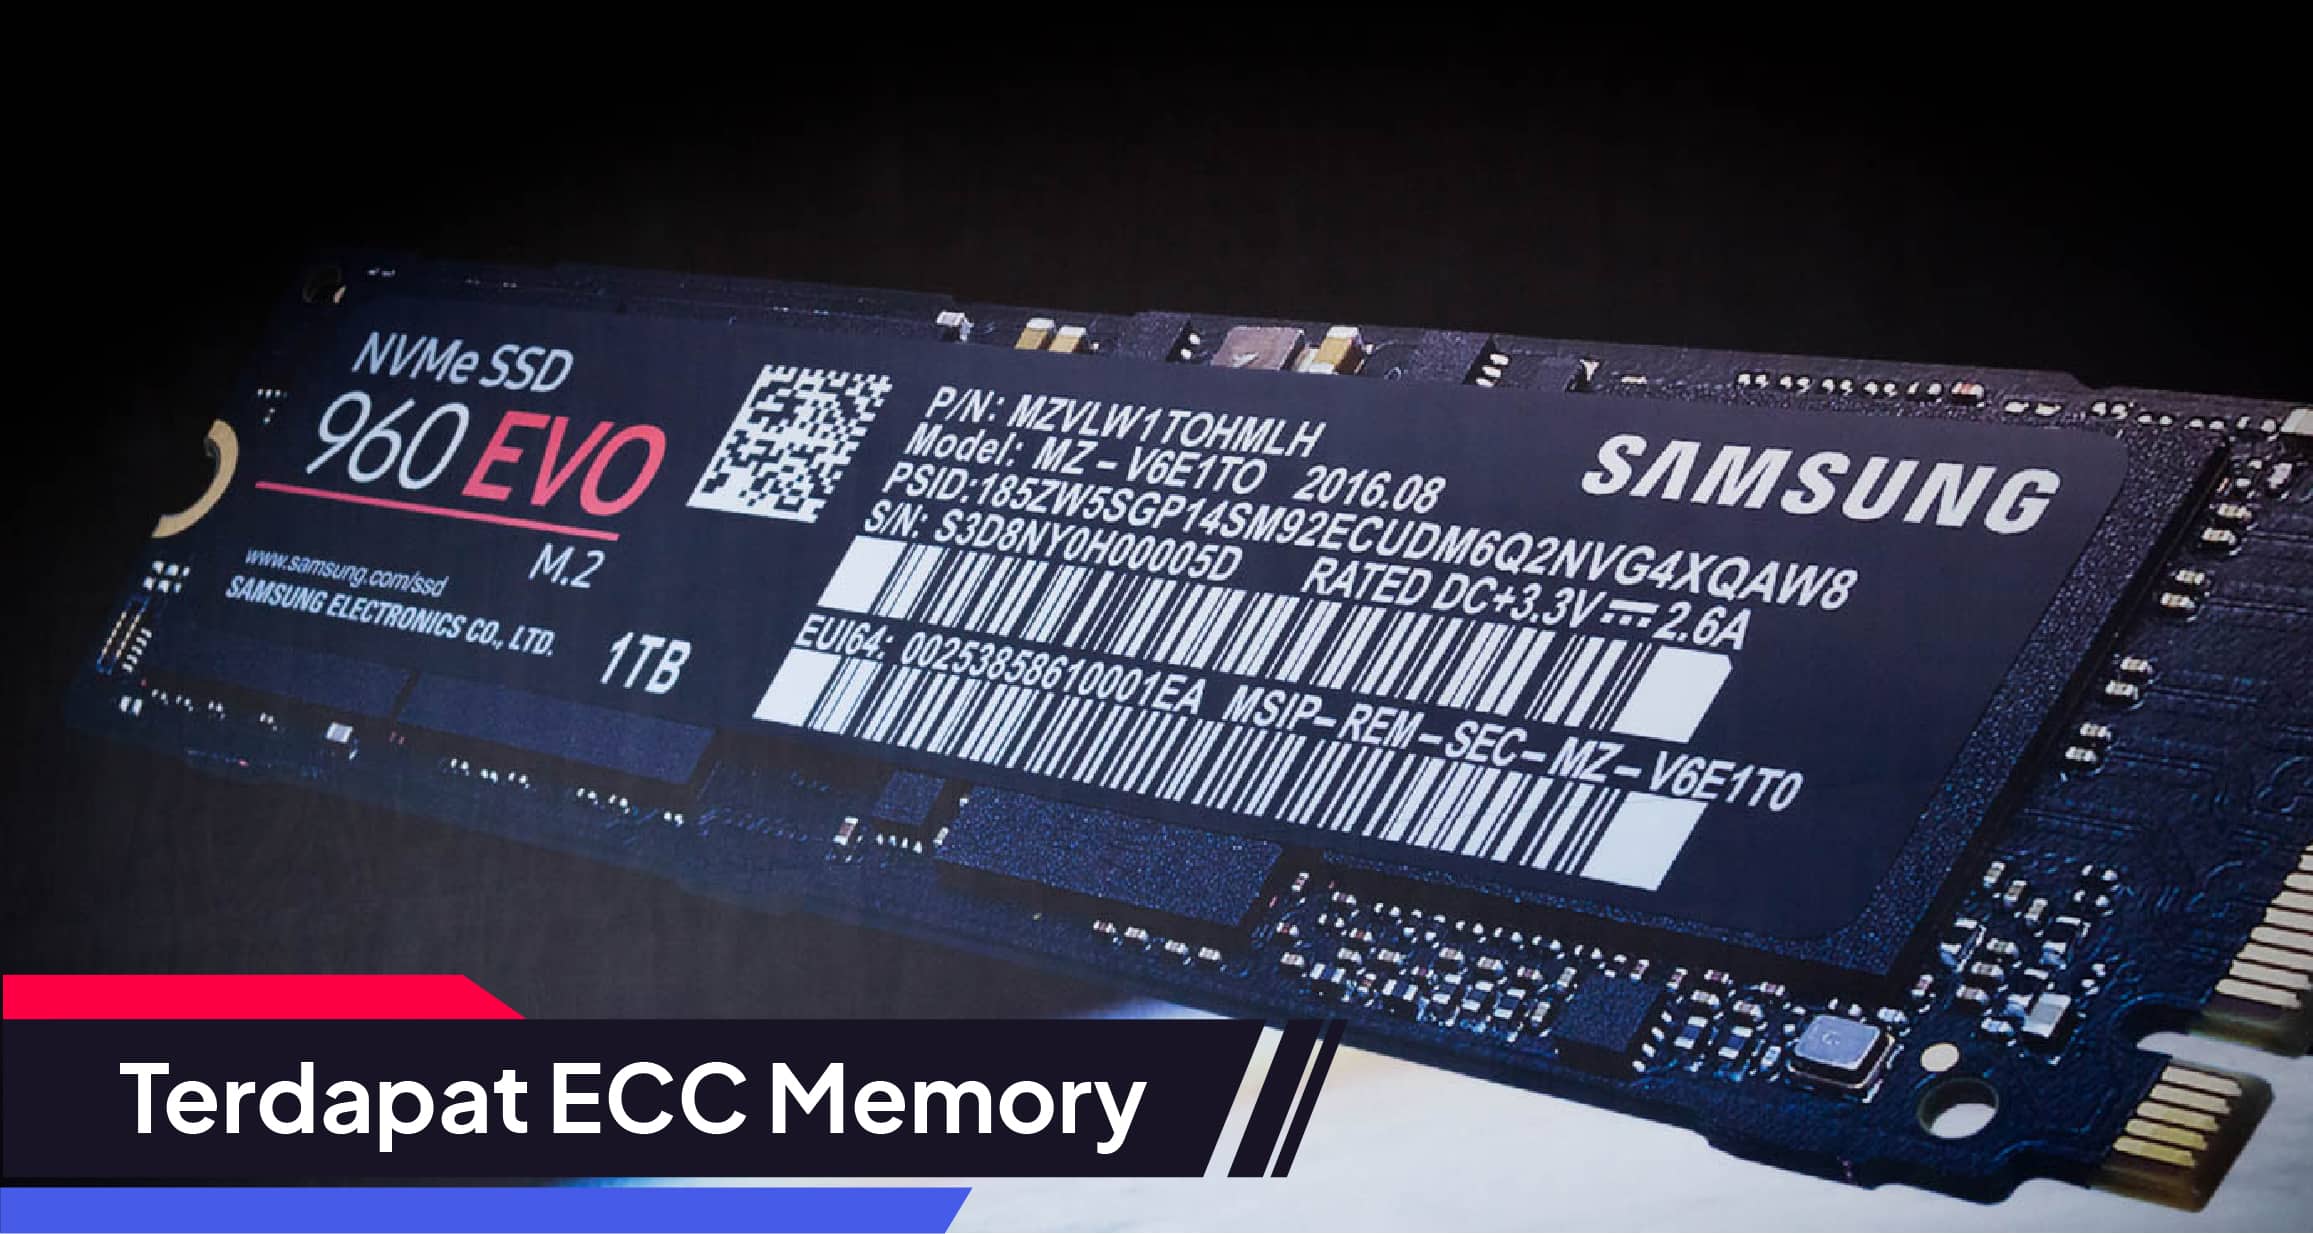 Toko Storage - Tips Memilih SSD Terbaik : Terdapat ECC Memory